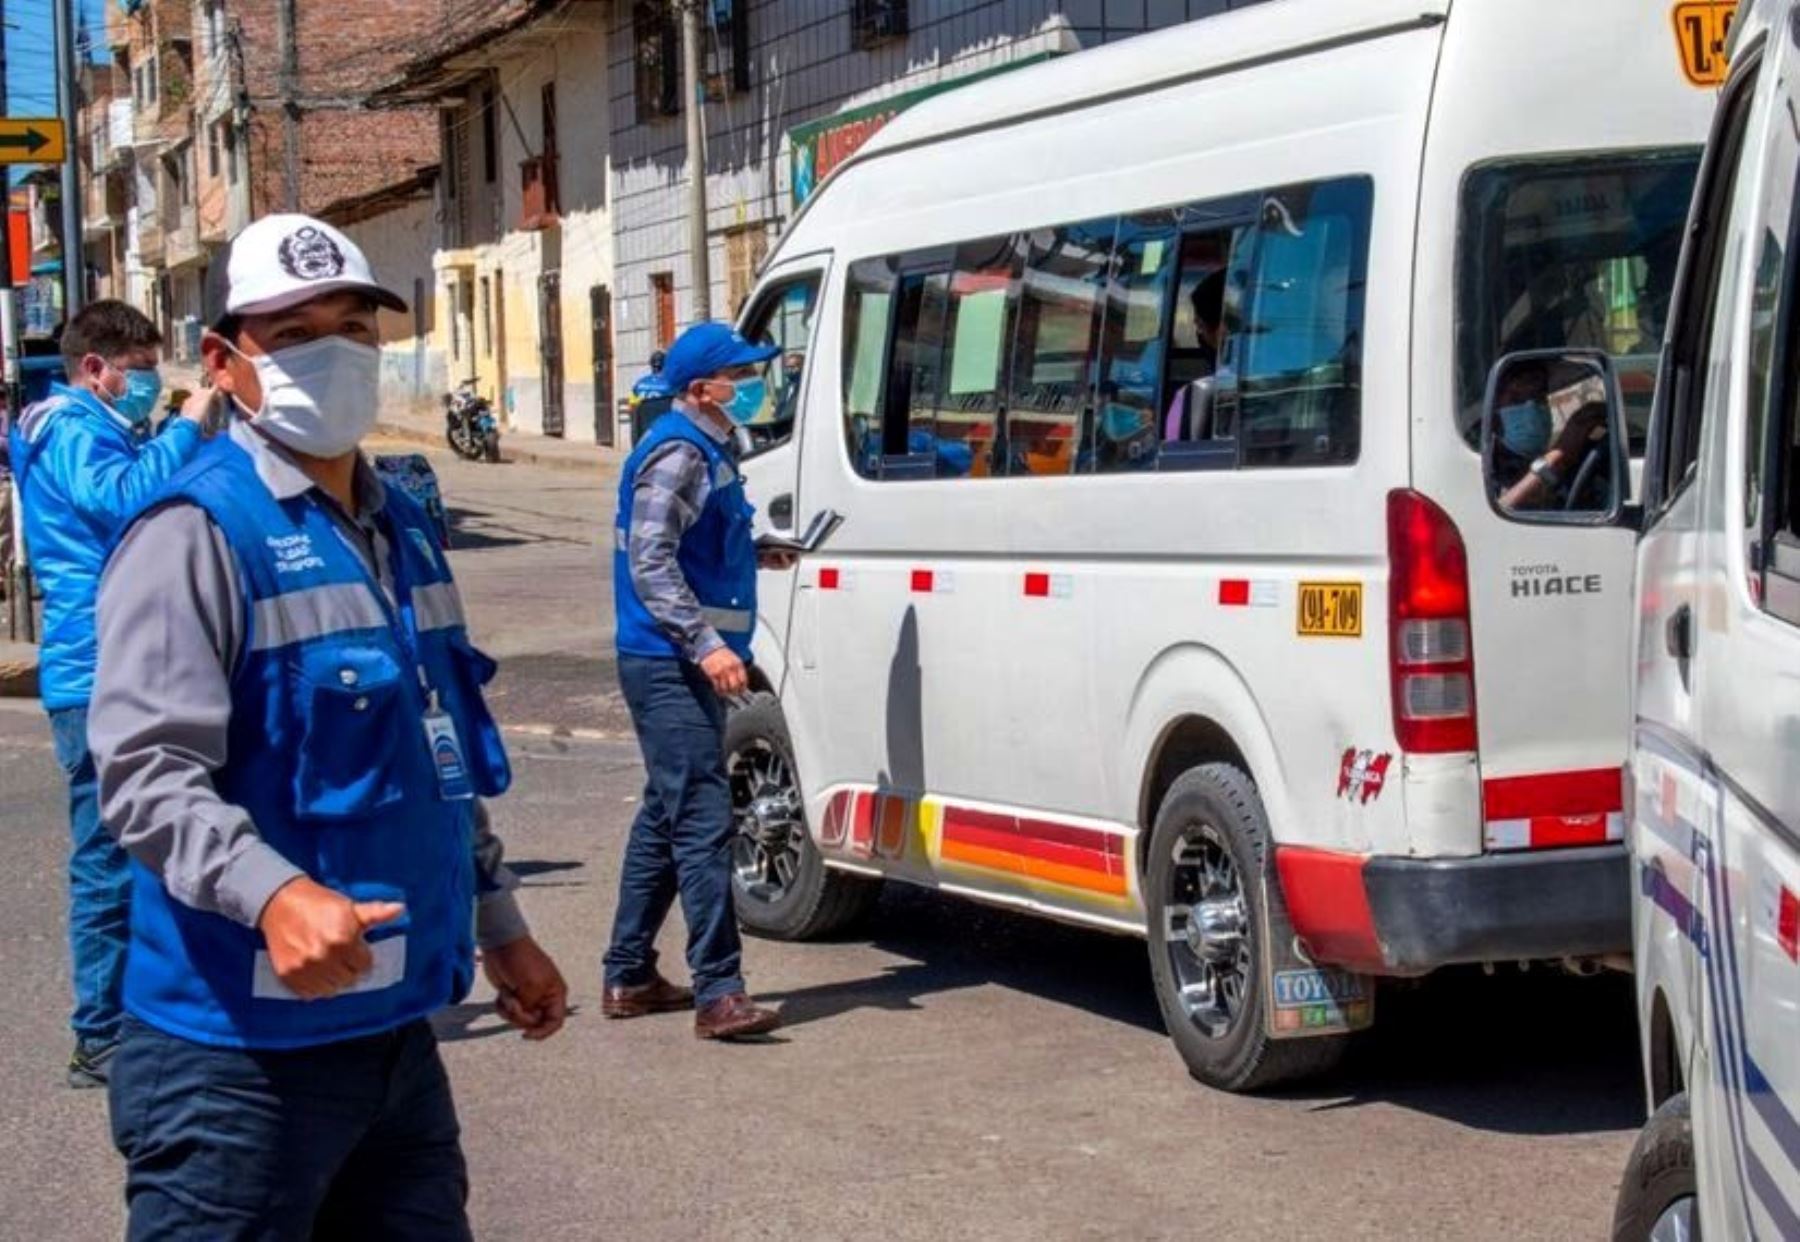 La Municipalidad de Cajamarca entregará subsidio económico a más de 300 transportistas urbanos de esa provincia para mitigar impacto económico del covid-19. ANDINA/Difusión